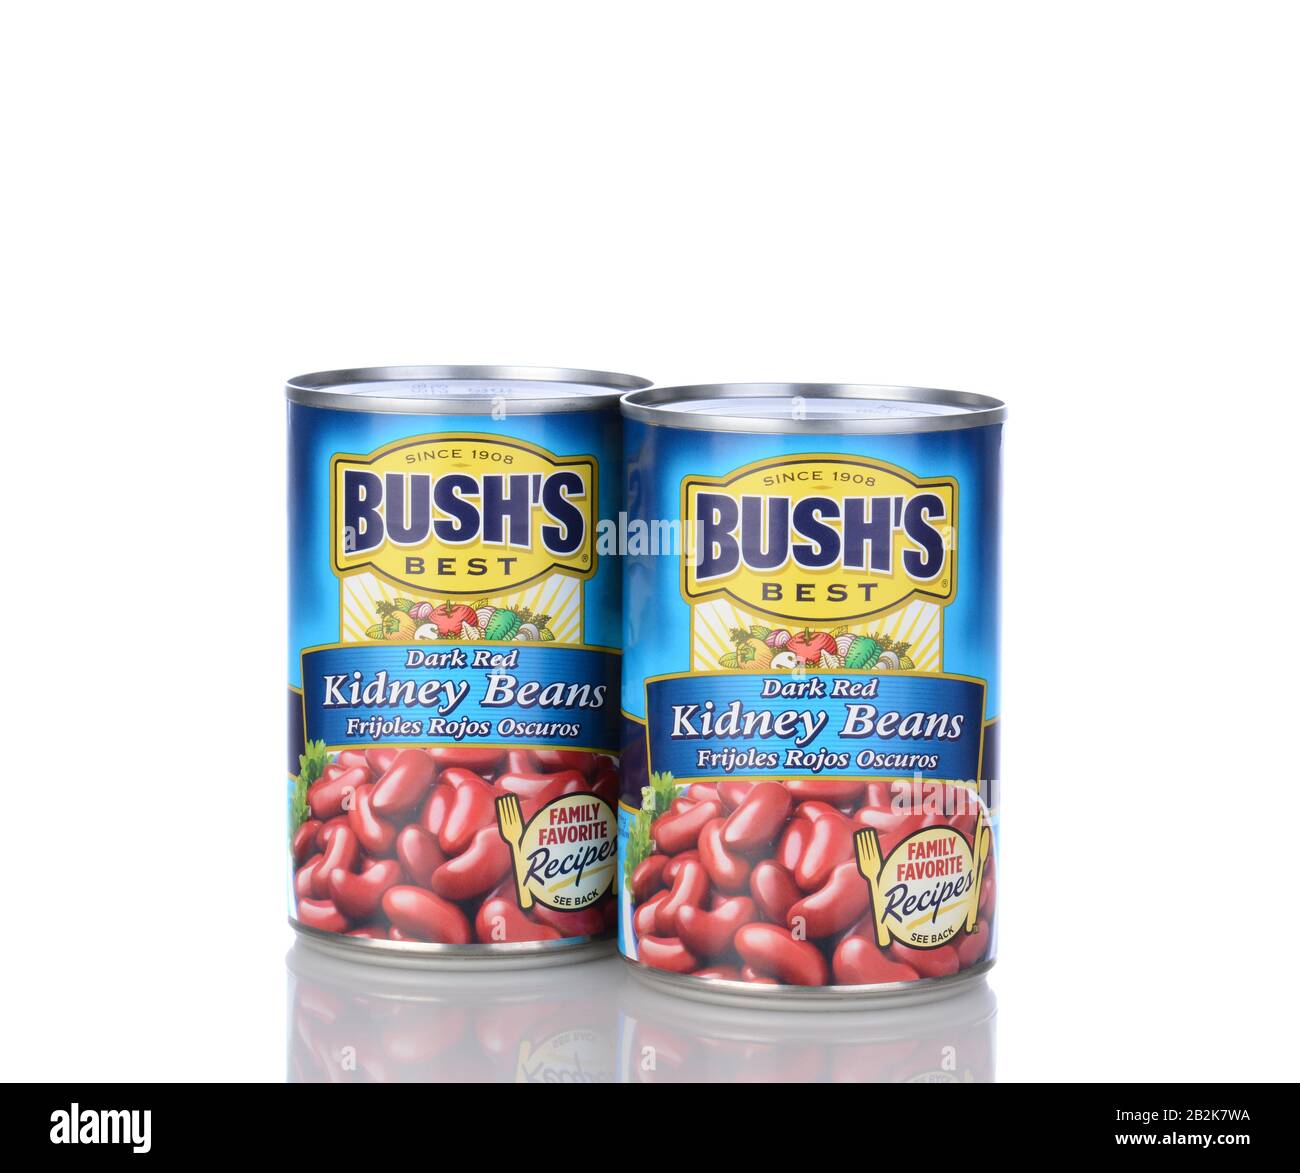 Irvine, CA - 05. Januar 2014: Zwei Dosen Bushs dunkelrote Nierenbohnen. Bushs Konserven seit 1908 Bohnen, derzeit mit einer Produktlinie von Ove Stockfoto